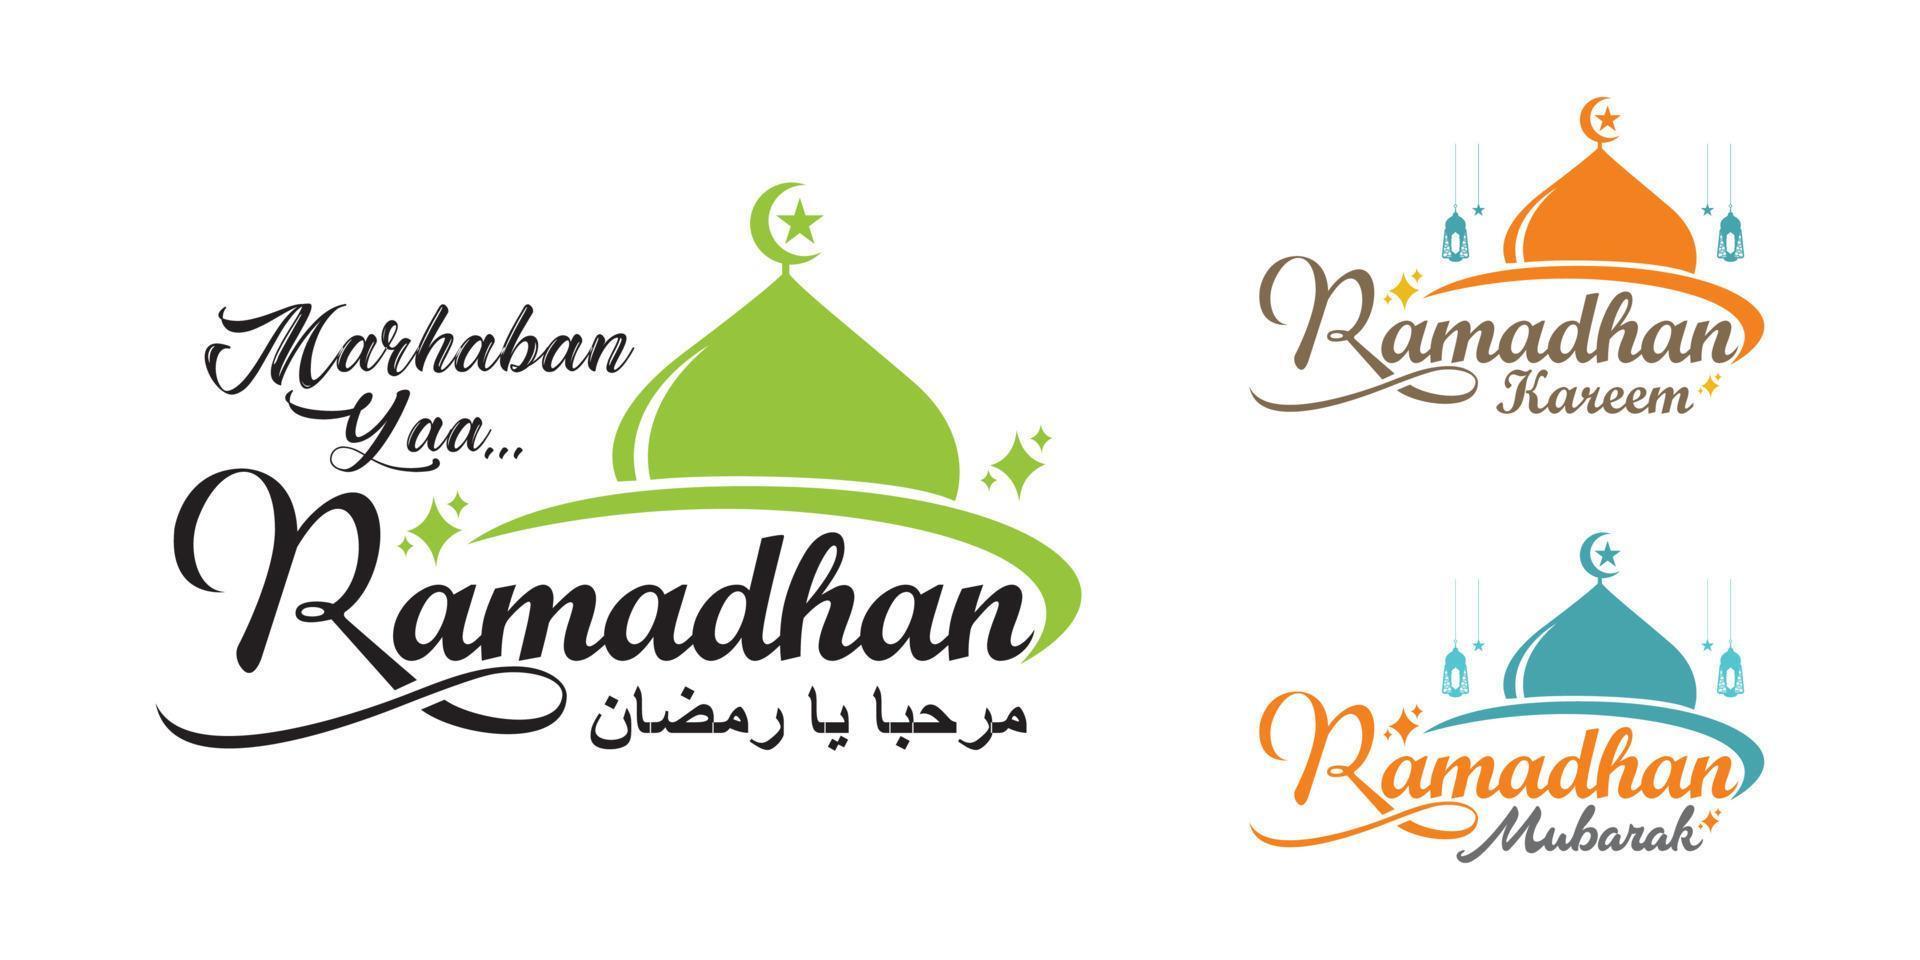 Marhaban Yaa Ramadan logo set. Ramadhan Mubarak, Arabic Calligraphy with mosque icon. vector